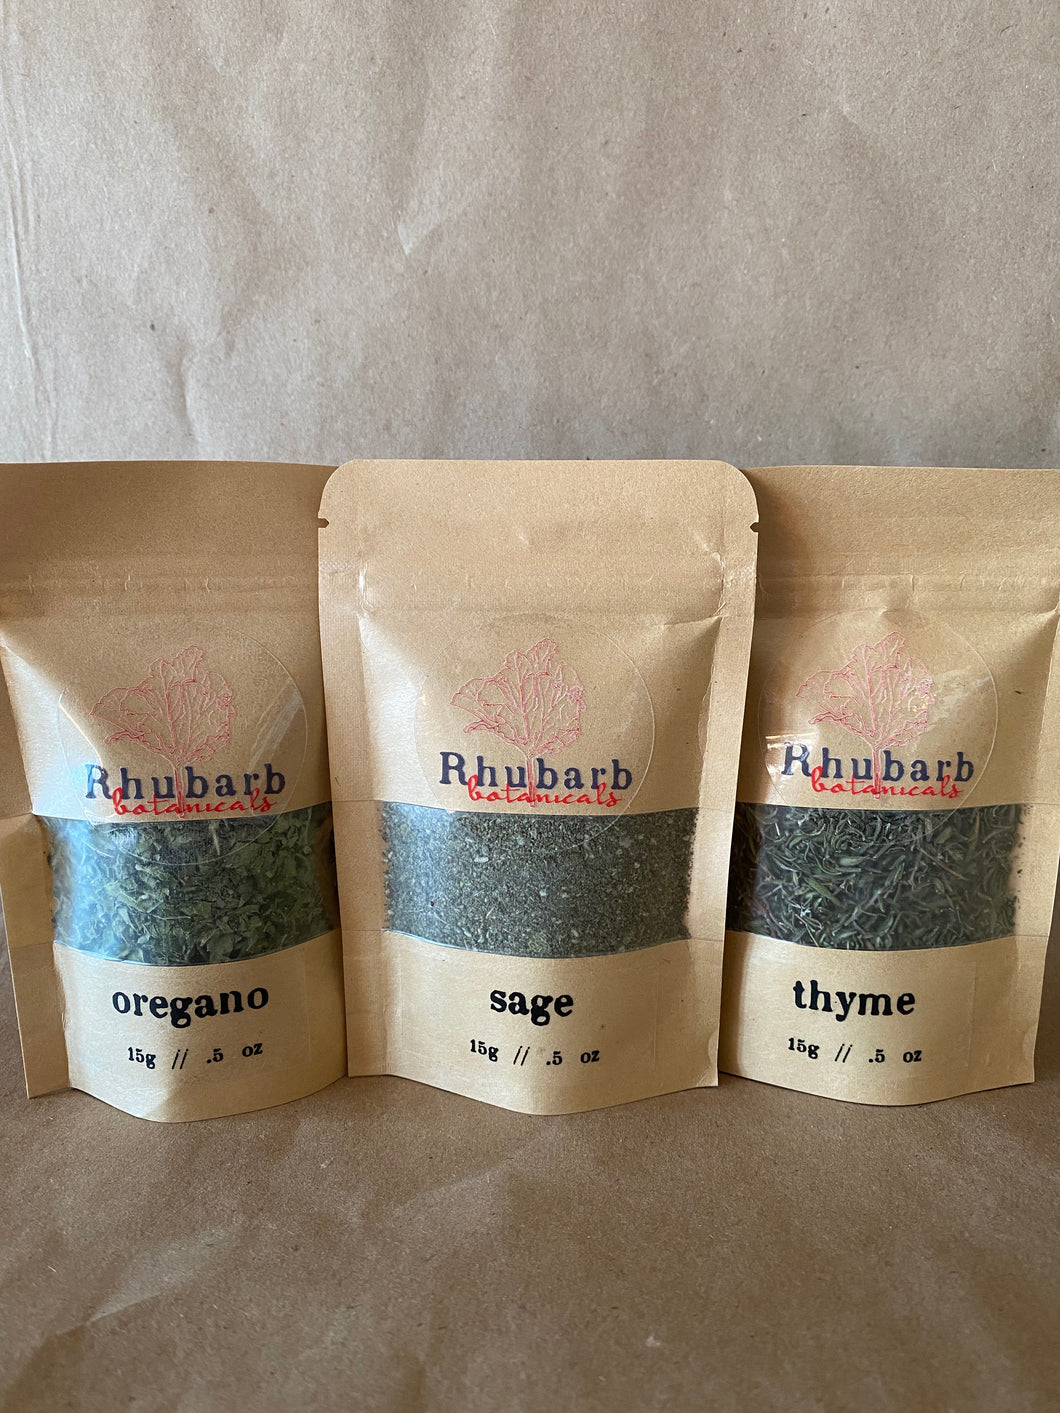 Culinary Herb Trio - Oregano, Sage, & Thyme